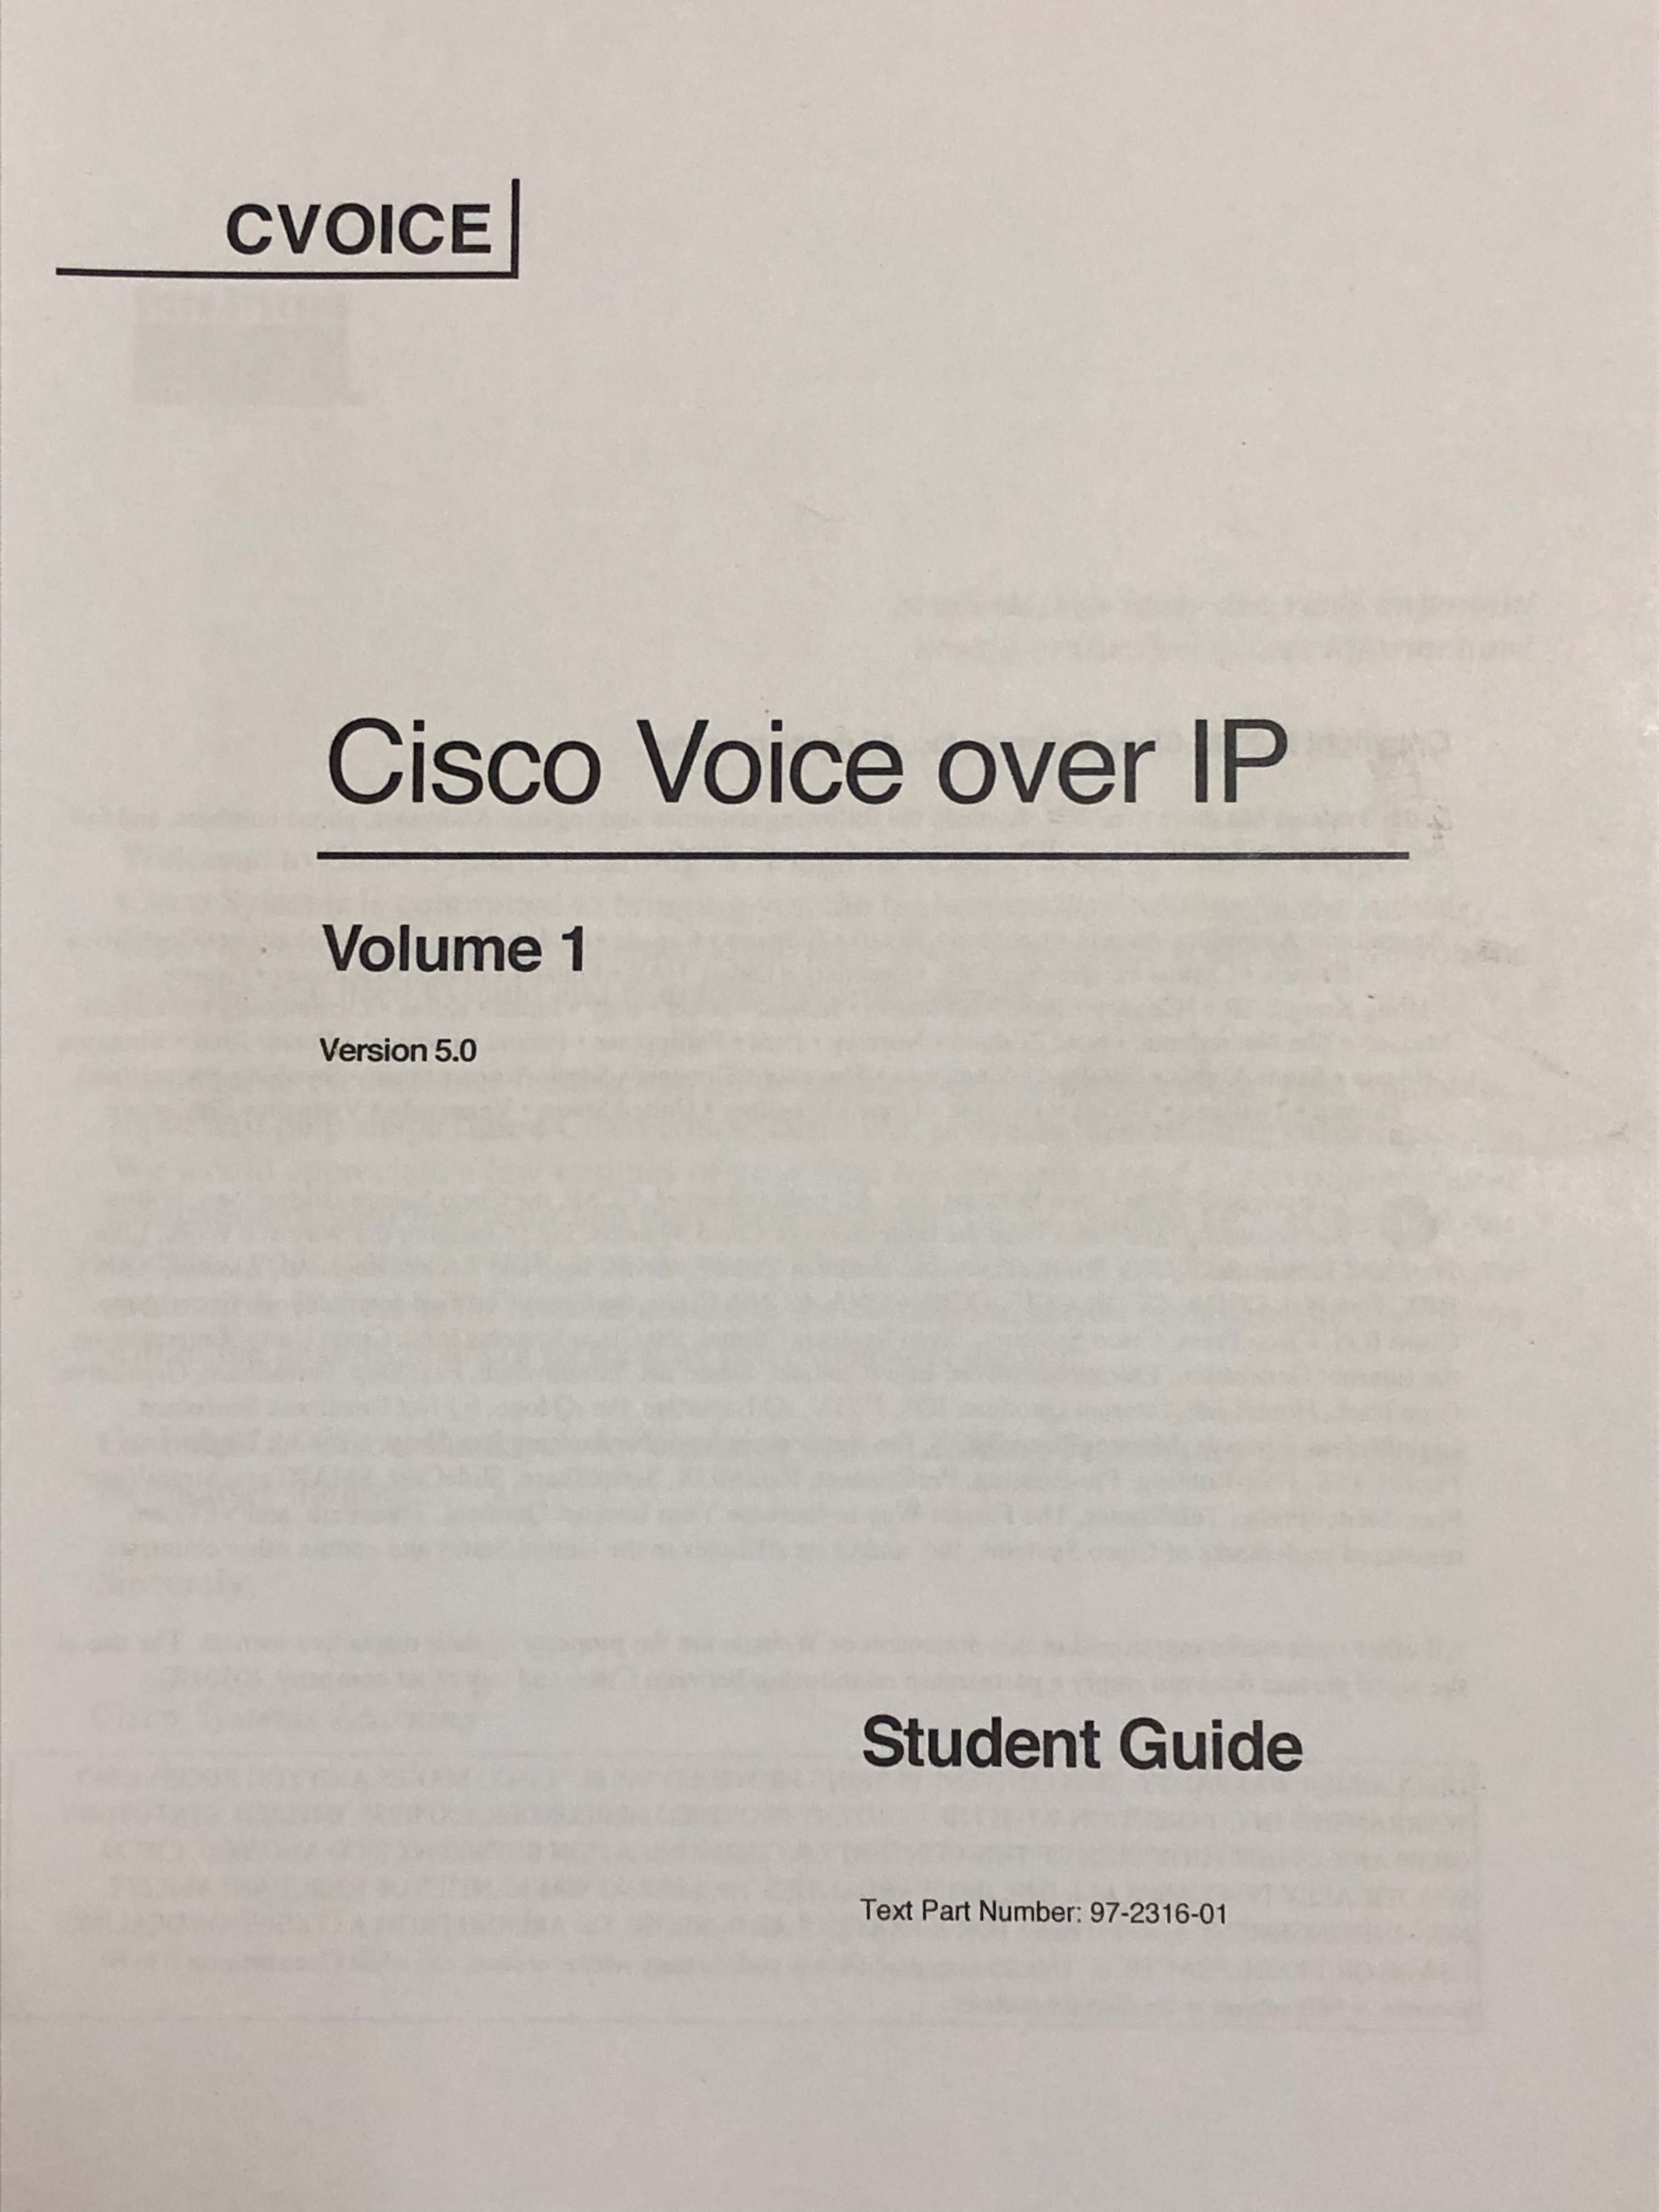 материалы учебного курса Cisco Voice over IP ,   3 тома